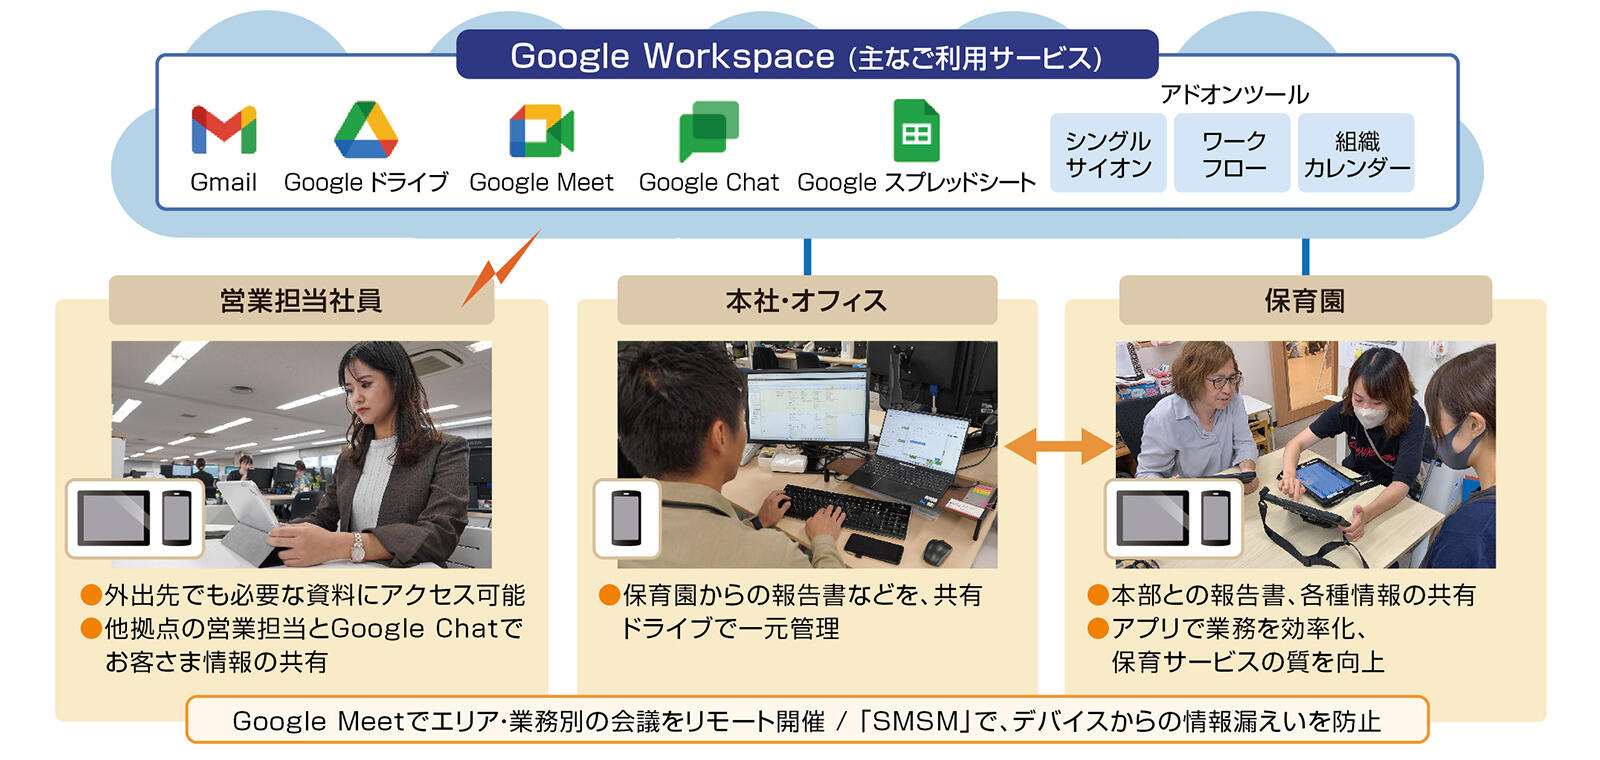 セリオ様による「Google Workspace」とデバイスの活用イメージ